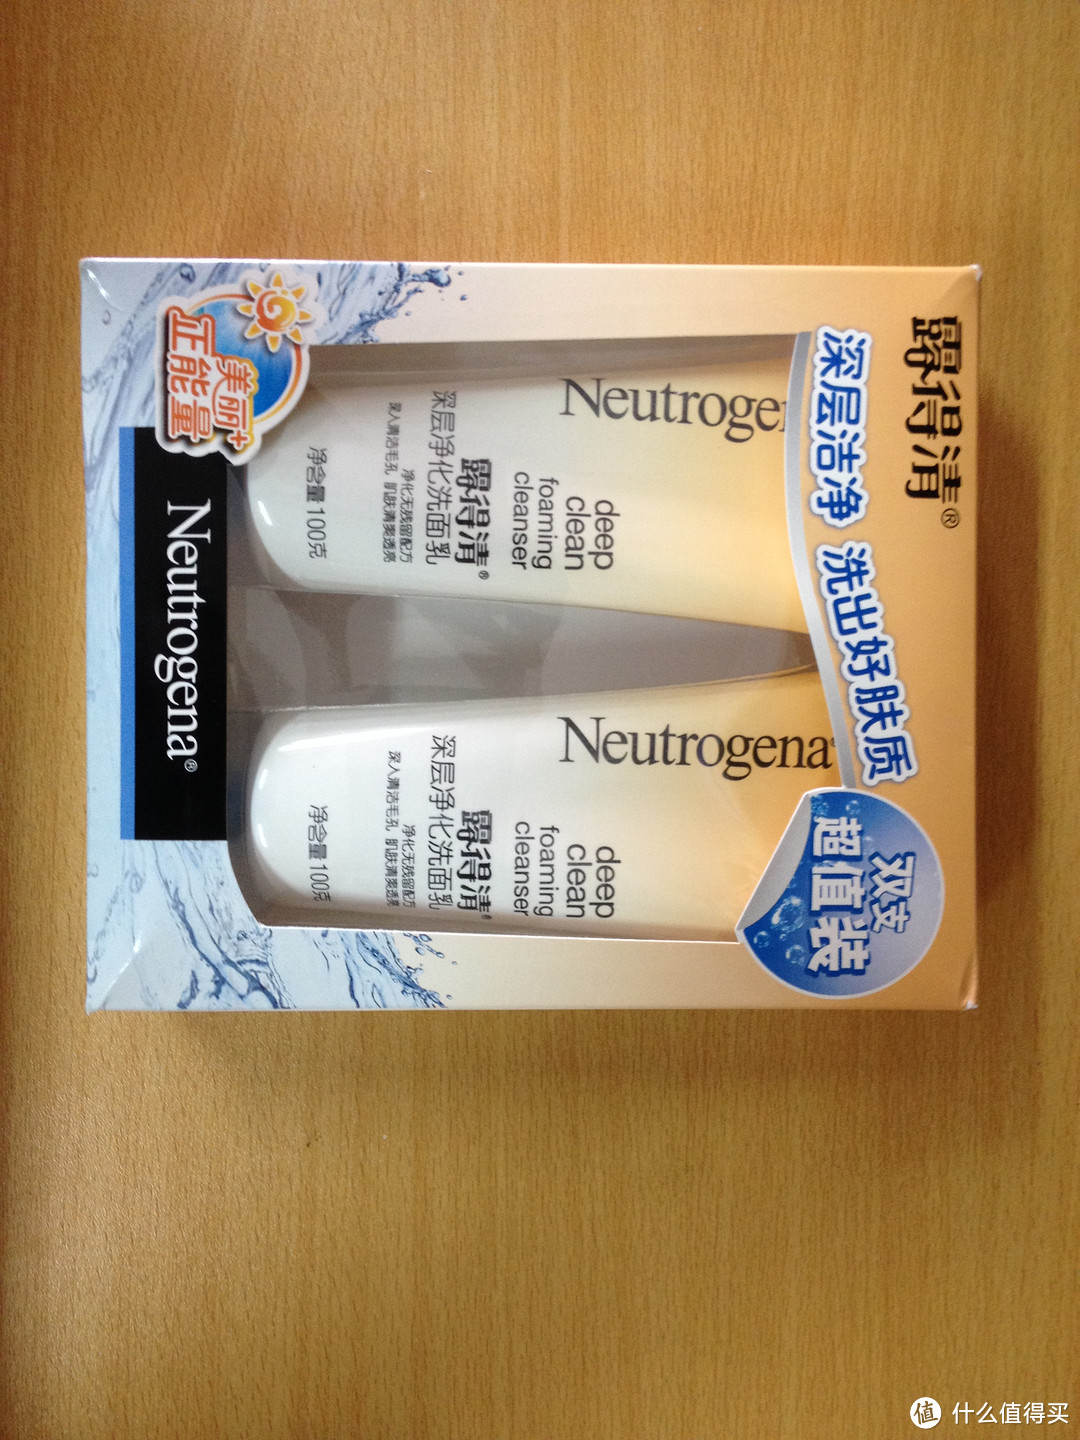 第一次写评测——Neutrogena 露得清 深层净化洗面乳评测